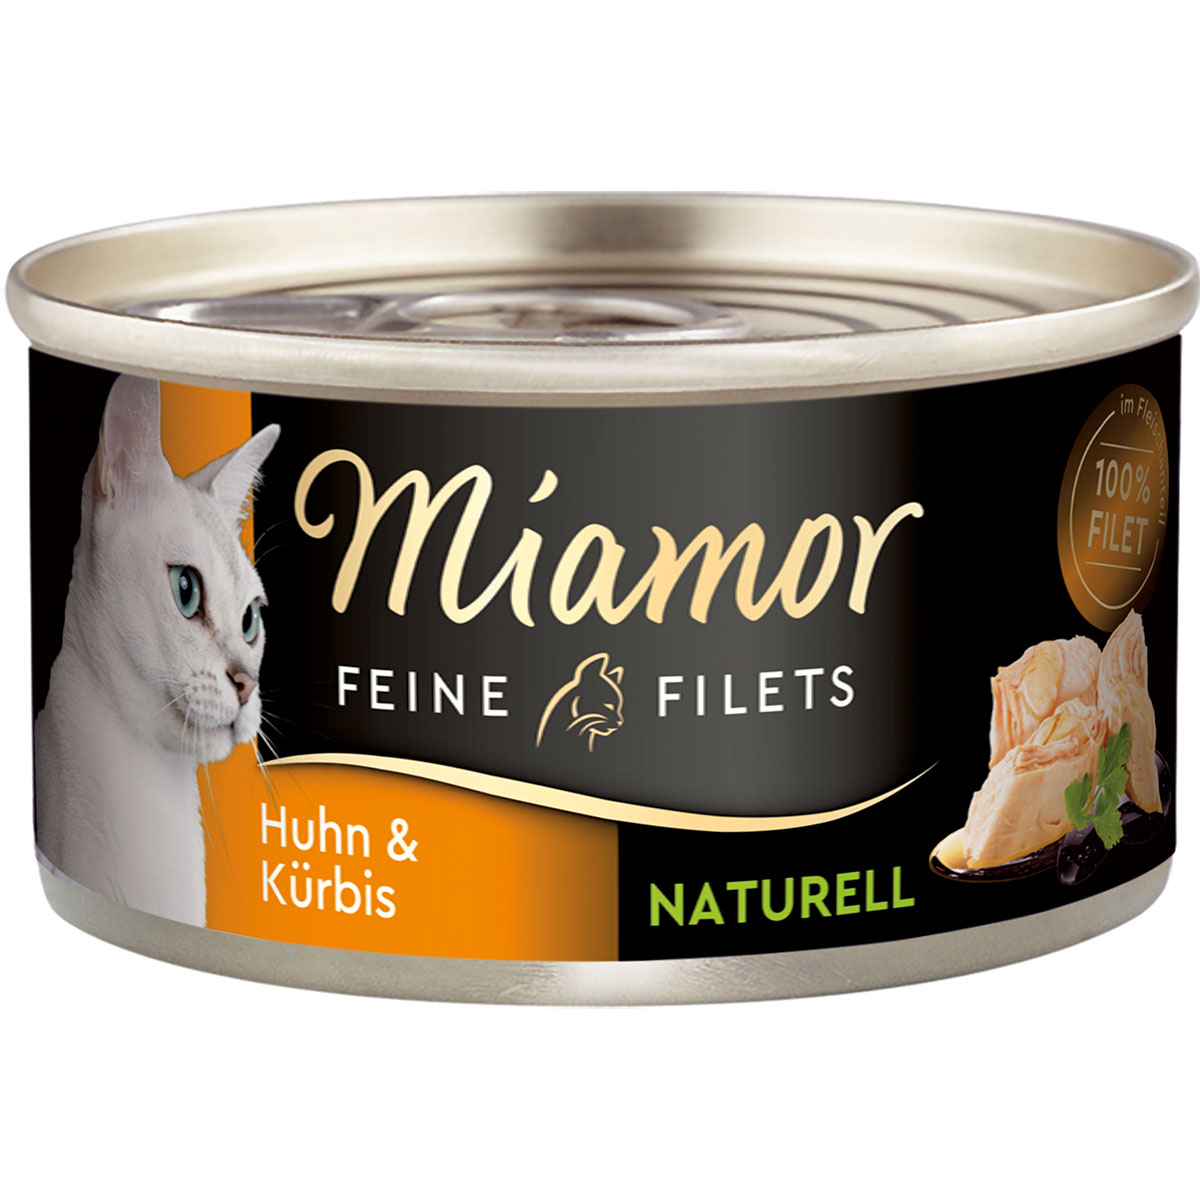 miamor feine filets naturelle huhn und kurbis 80g